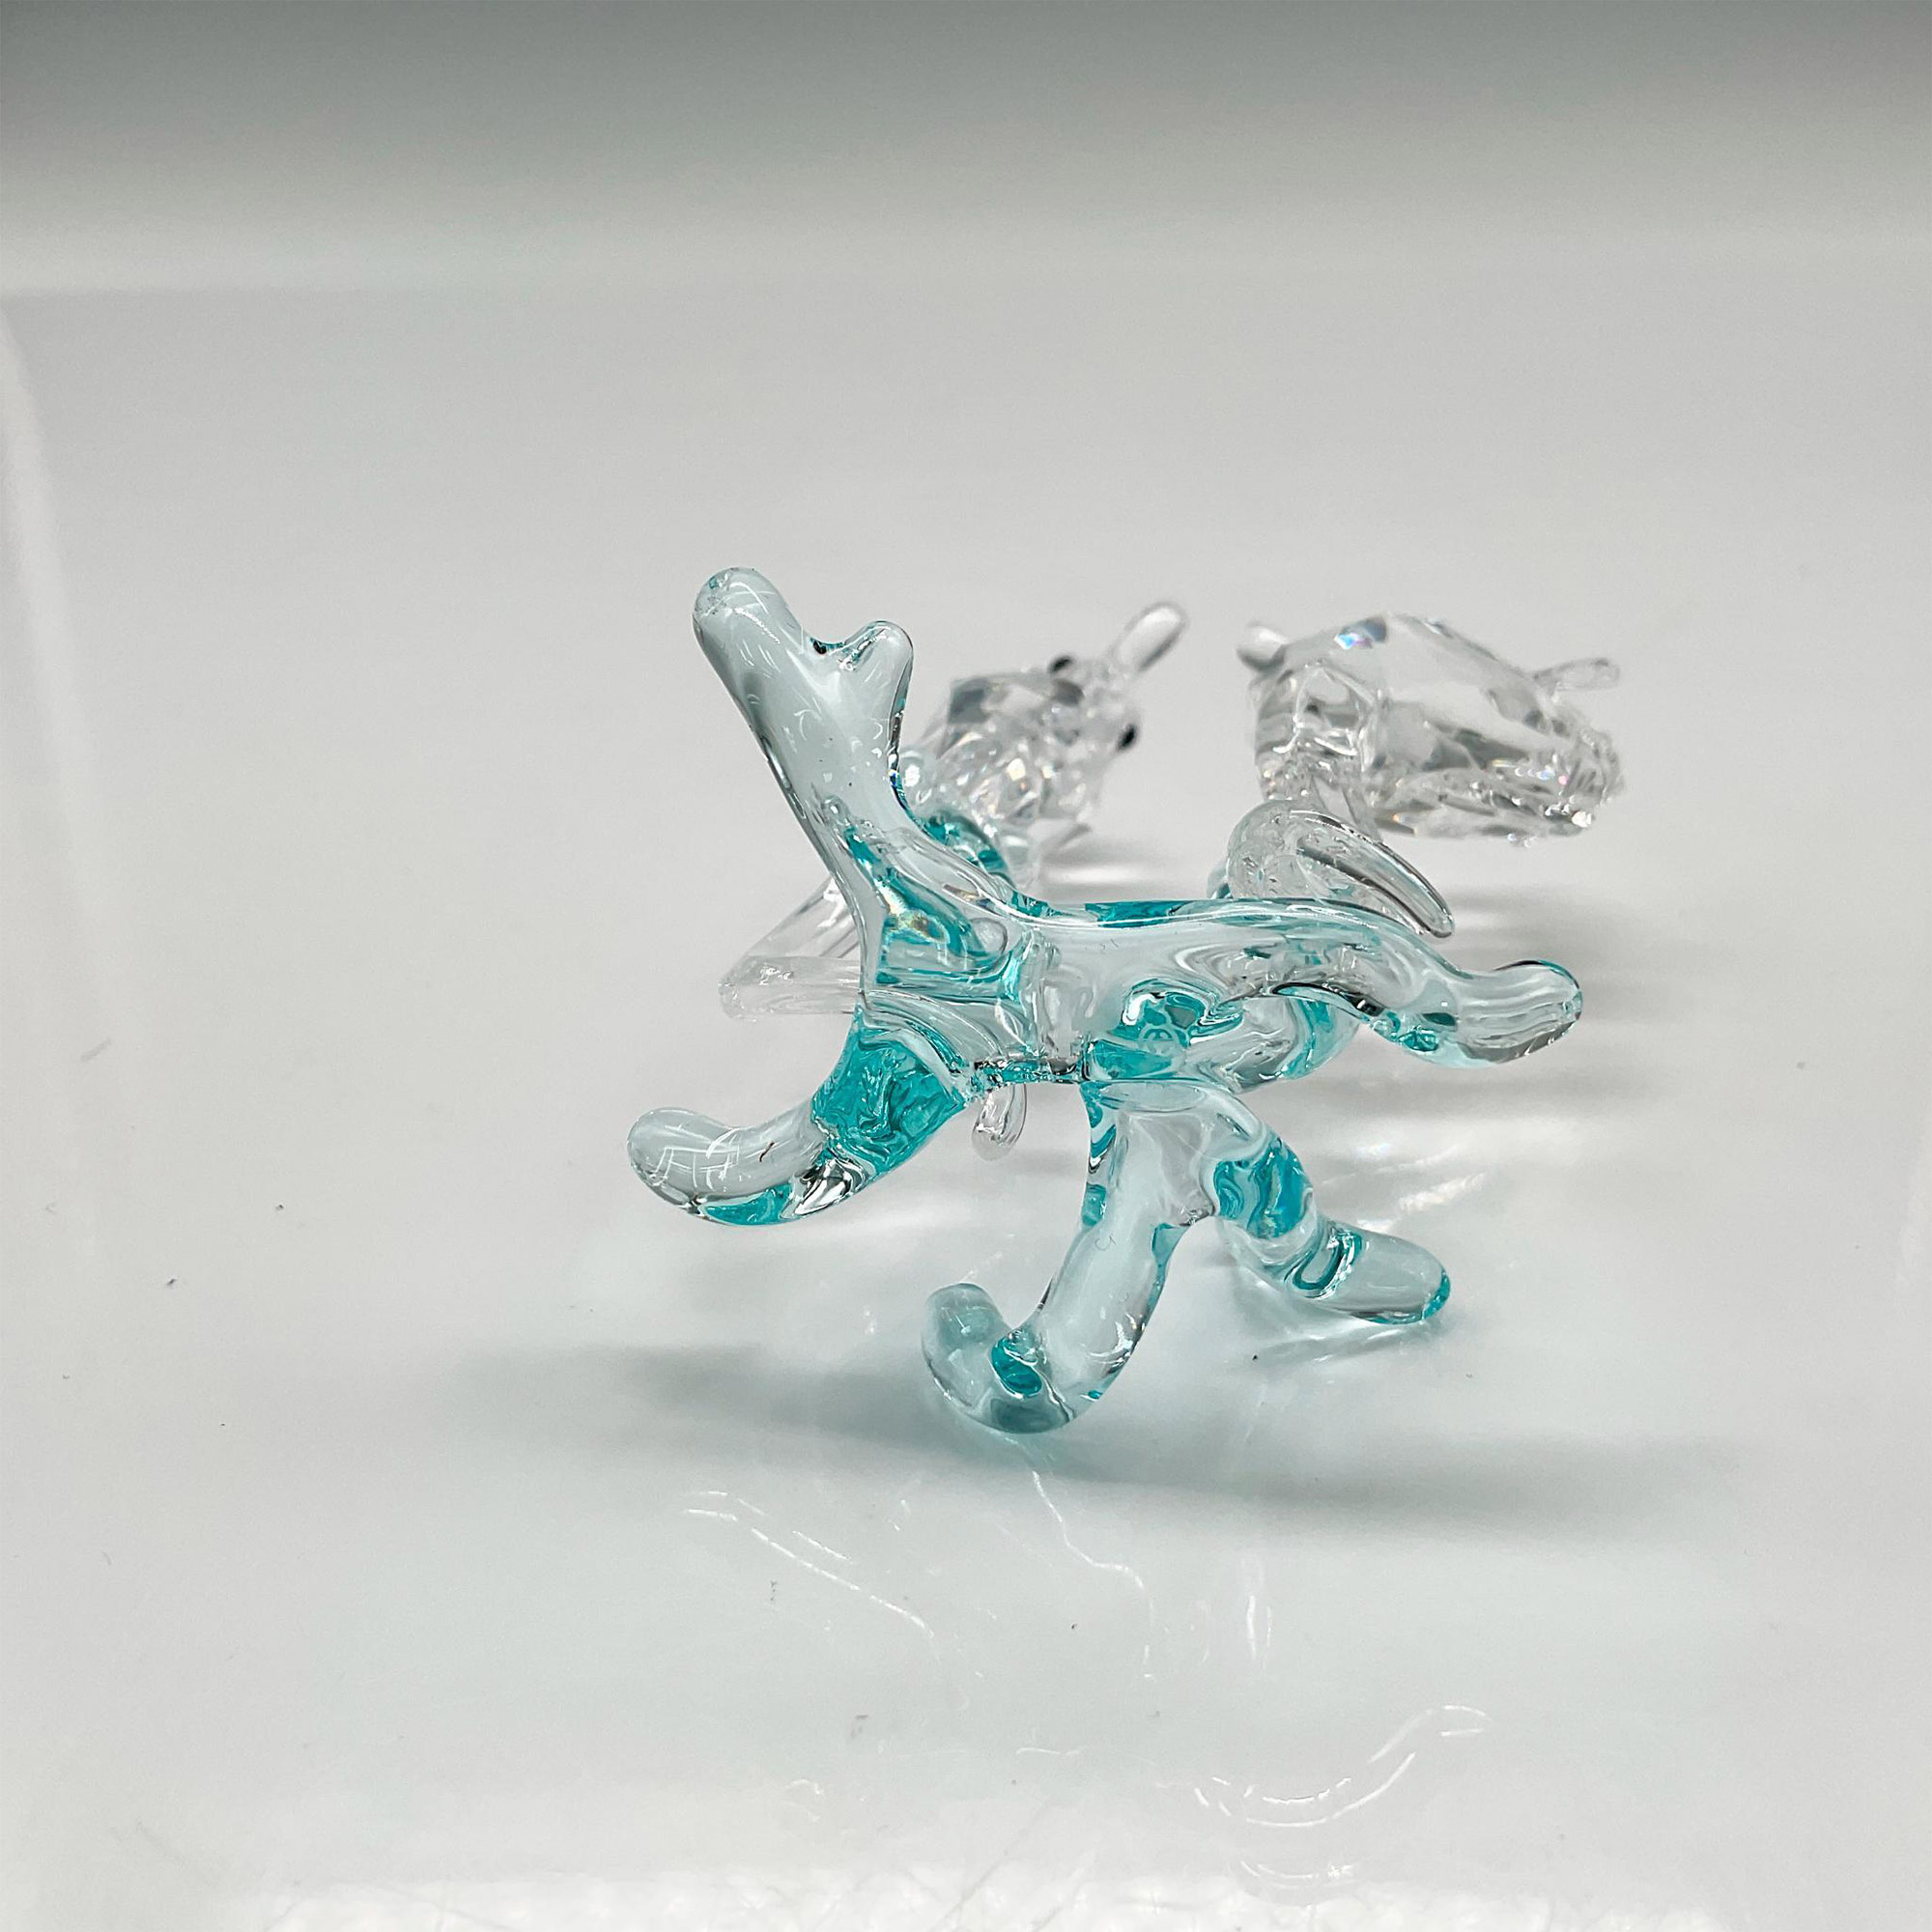 Swarovski Crystal Figurine, Seahorses - Image 3 of 4